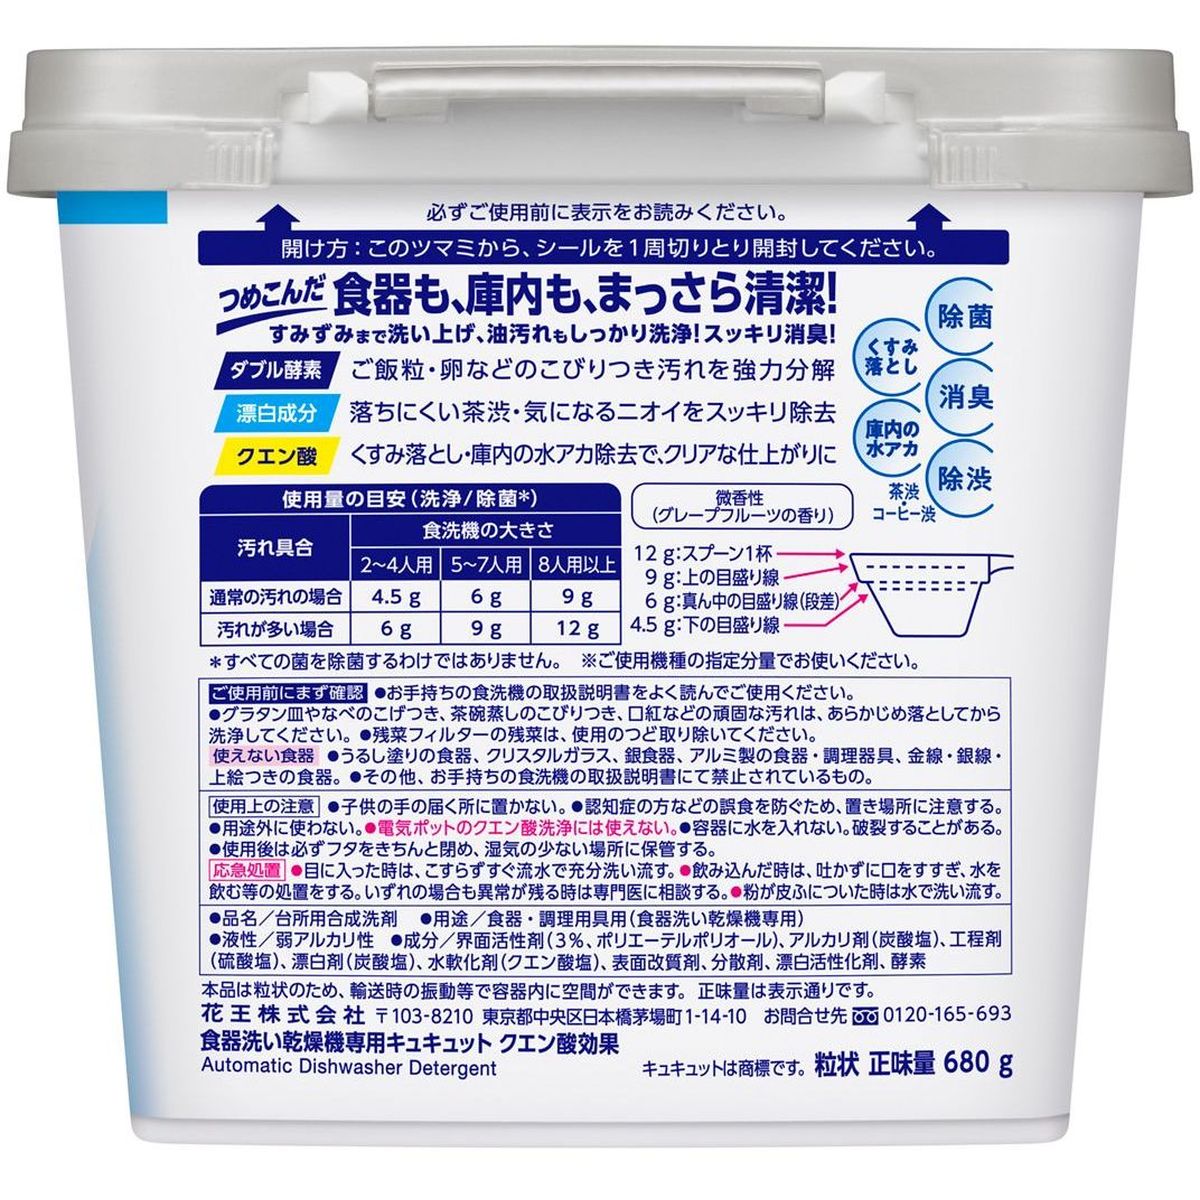 食器洗い乾燥機専用 キュキュットクエン酸効果 本体 680g